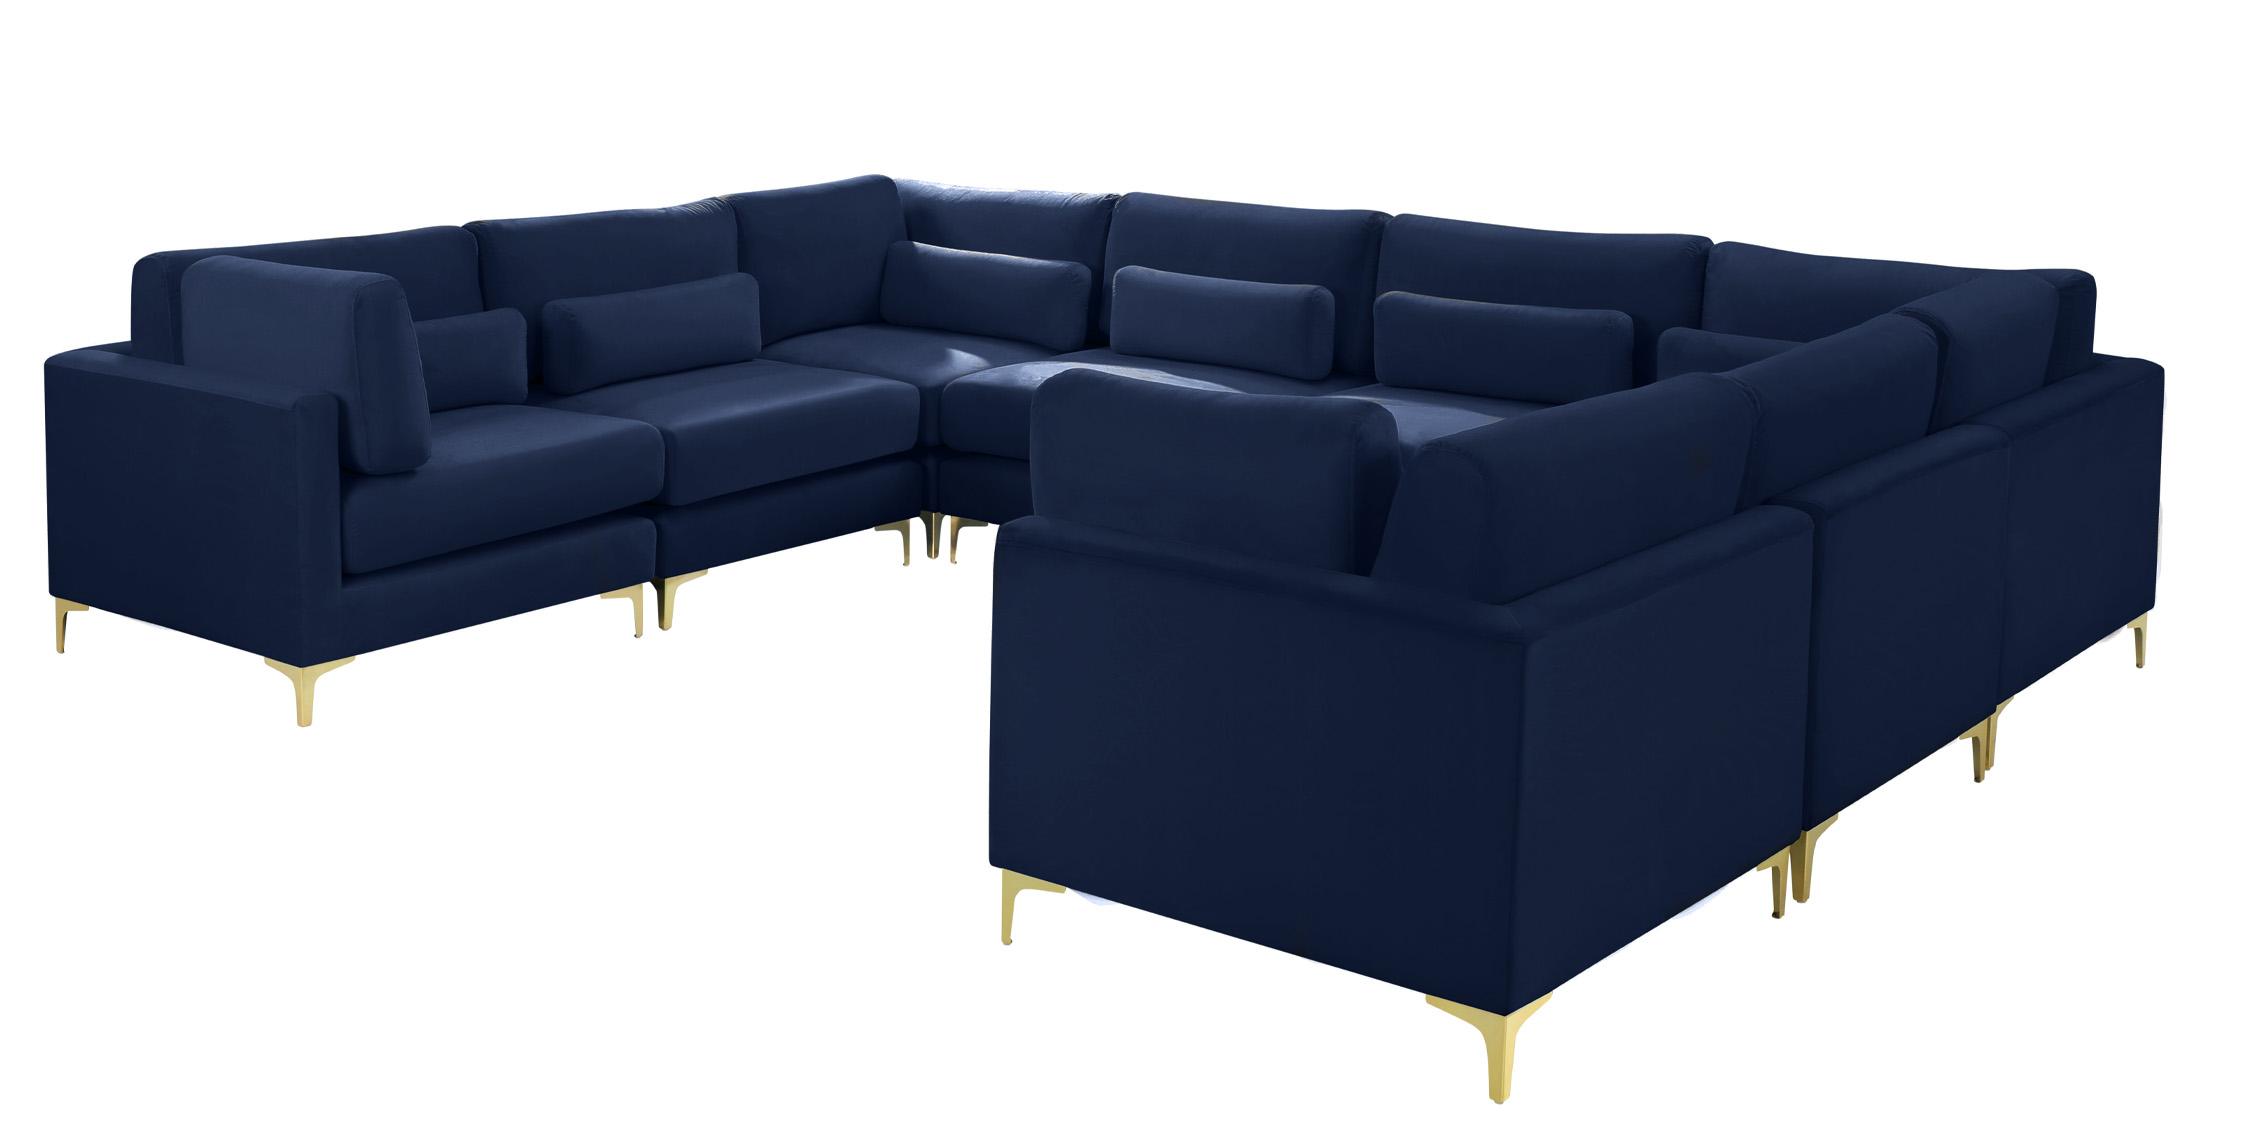 

    
Meridian Furniture JULIA Modular Sectional Sofa Navy 605Navy-Sec8A
